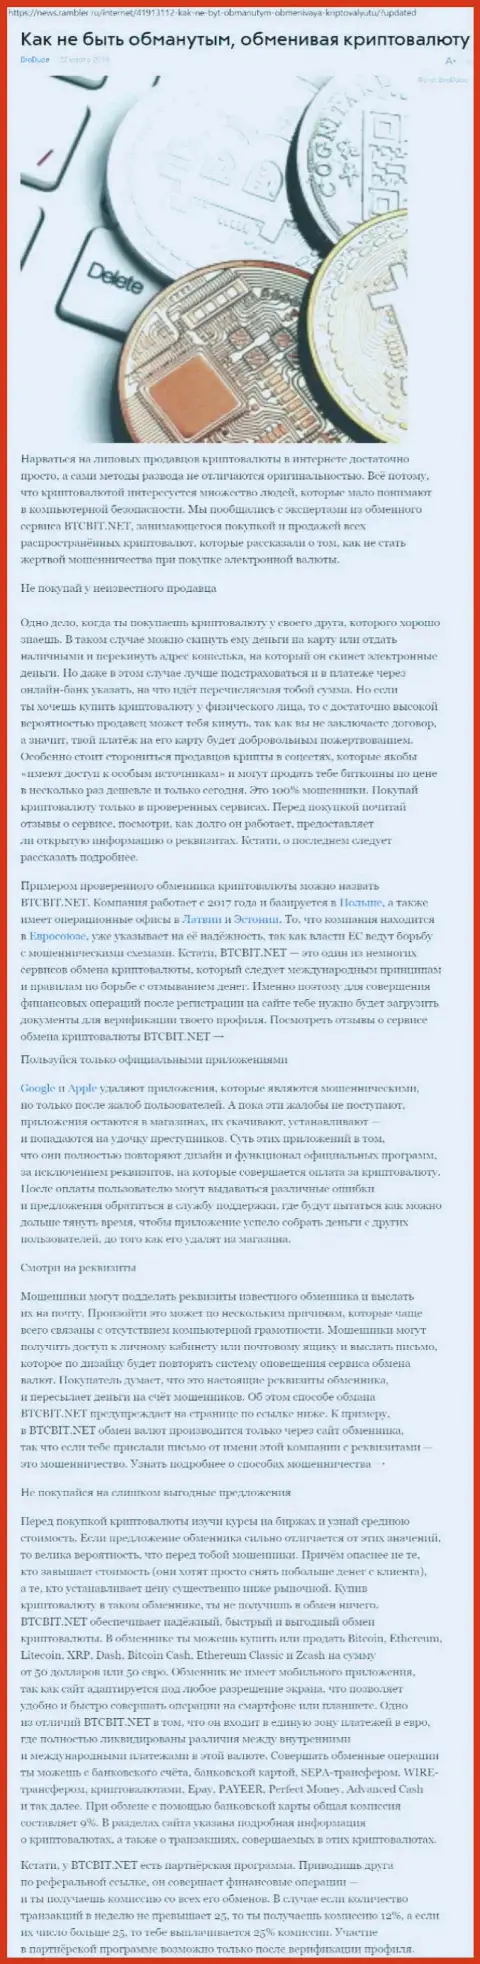 Статья об online обменнике БТЦБИТ Нет на news rambler ru